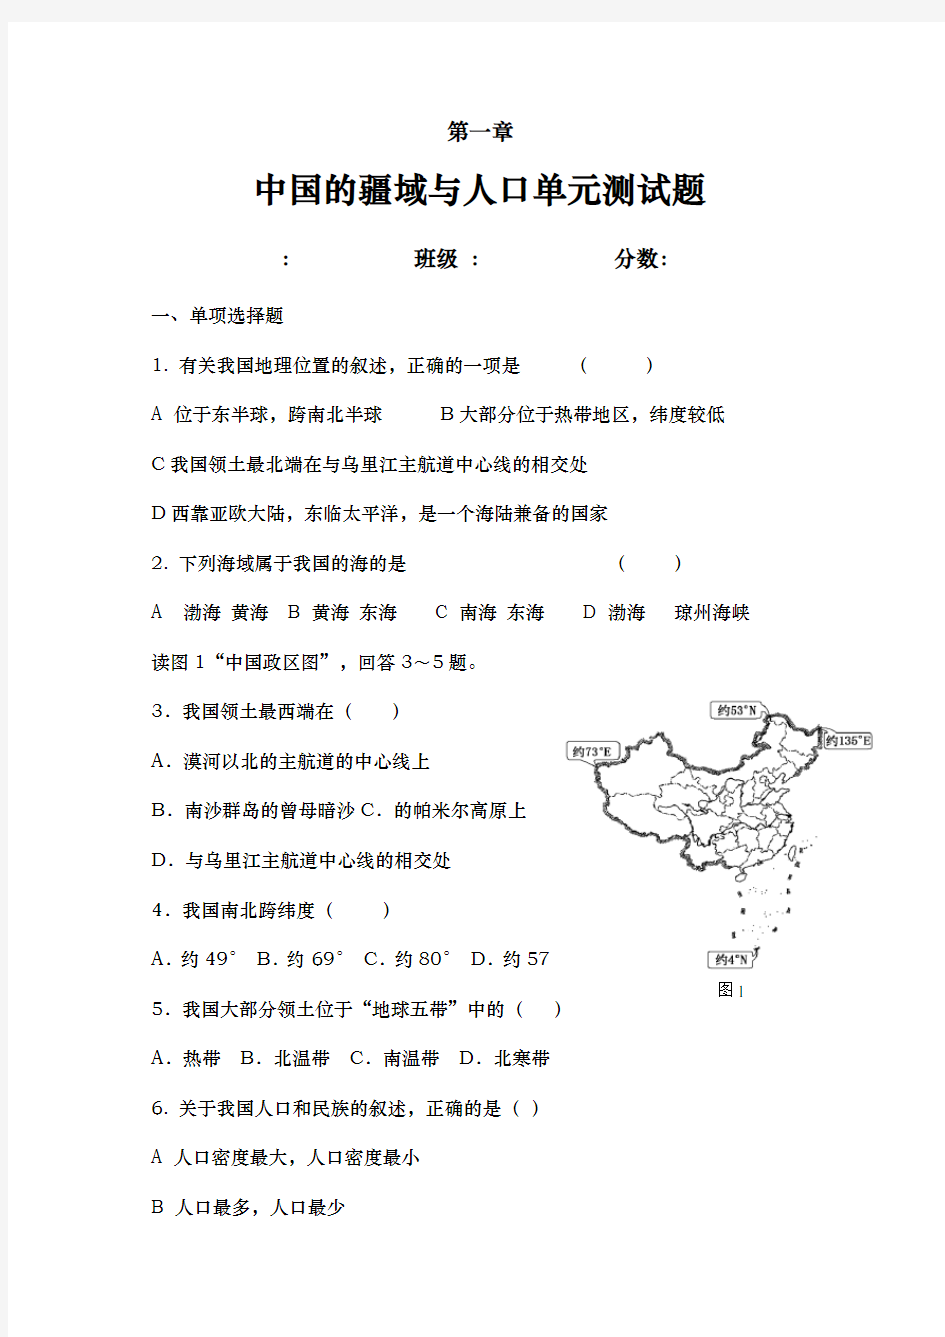 第一章中国的疆域和人口练习题